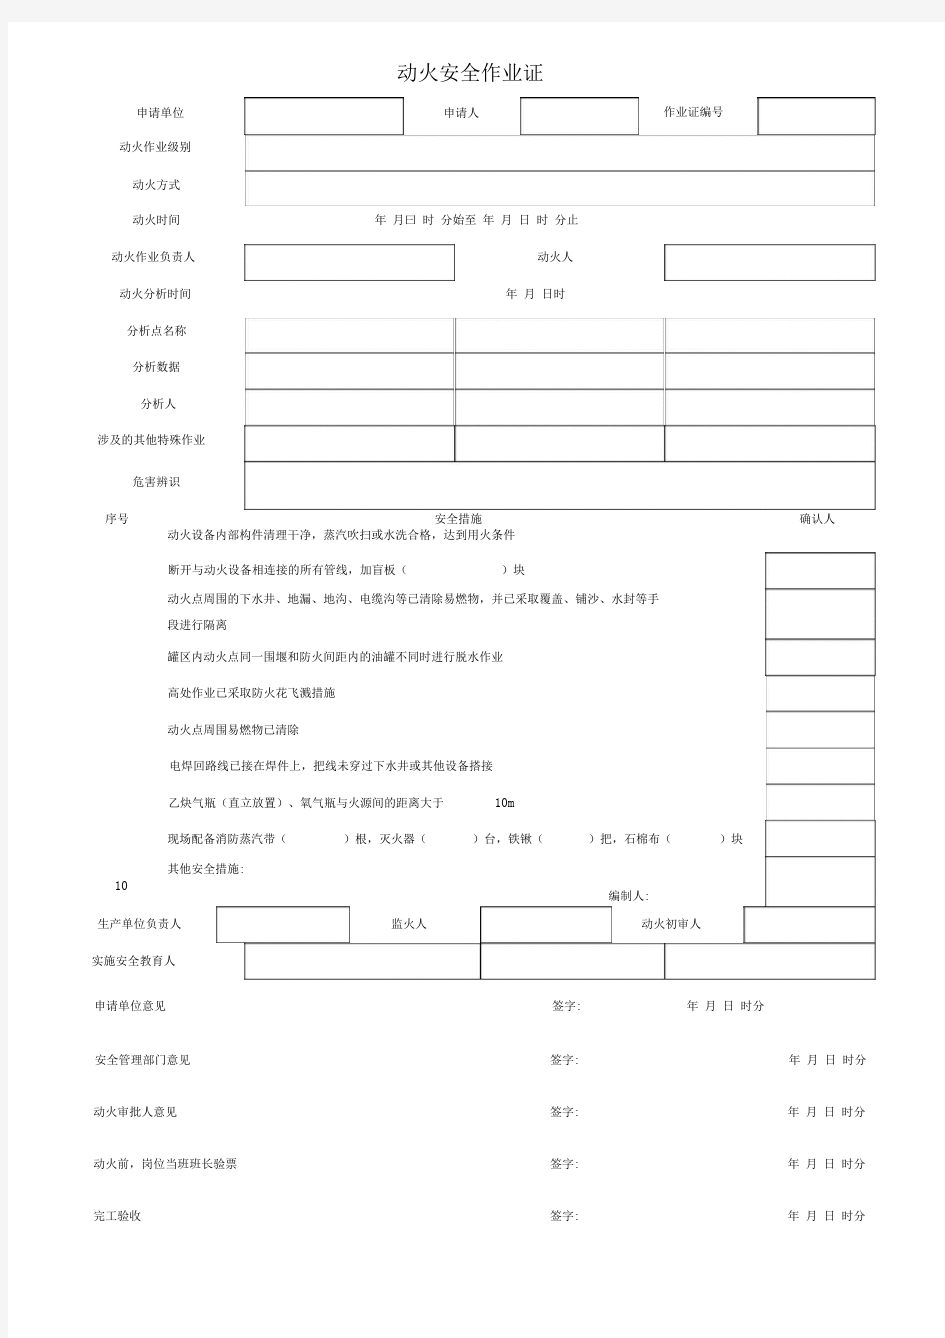 八大特殊作业票证(模板)(20210111035529)